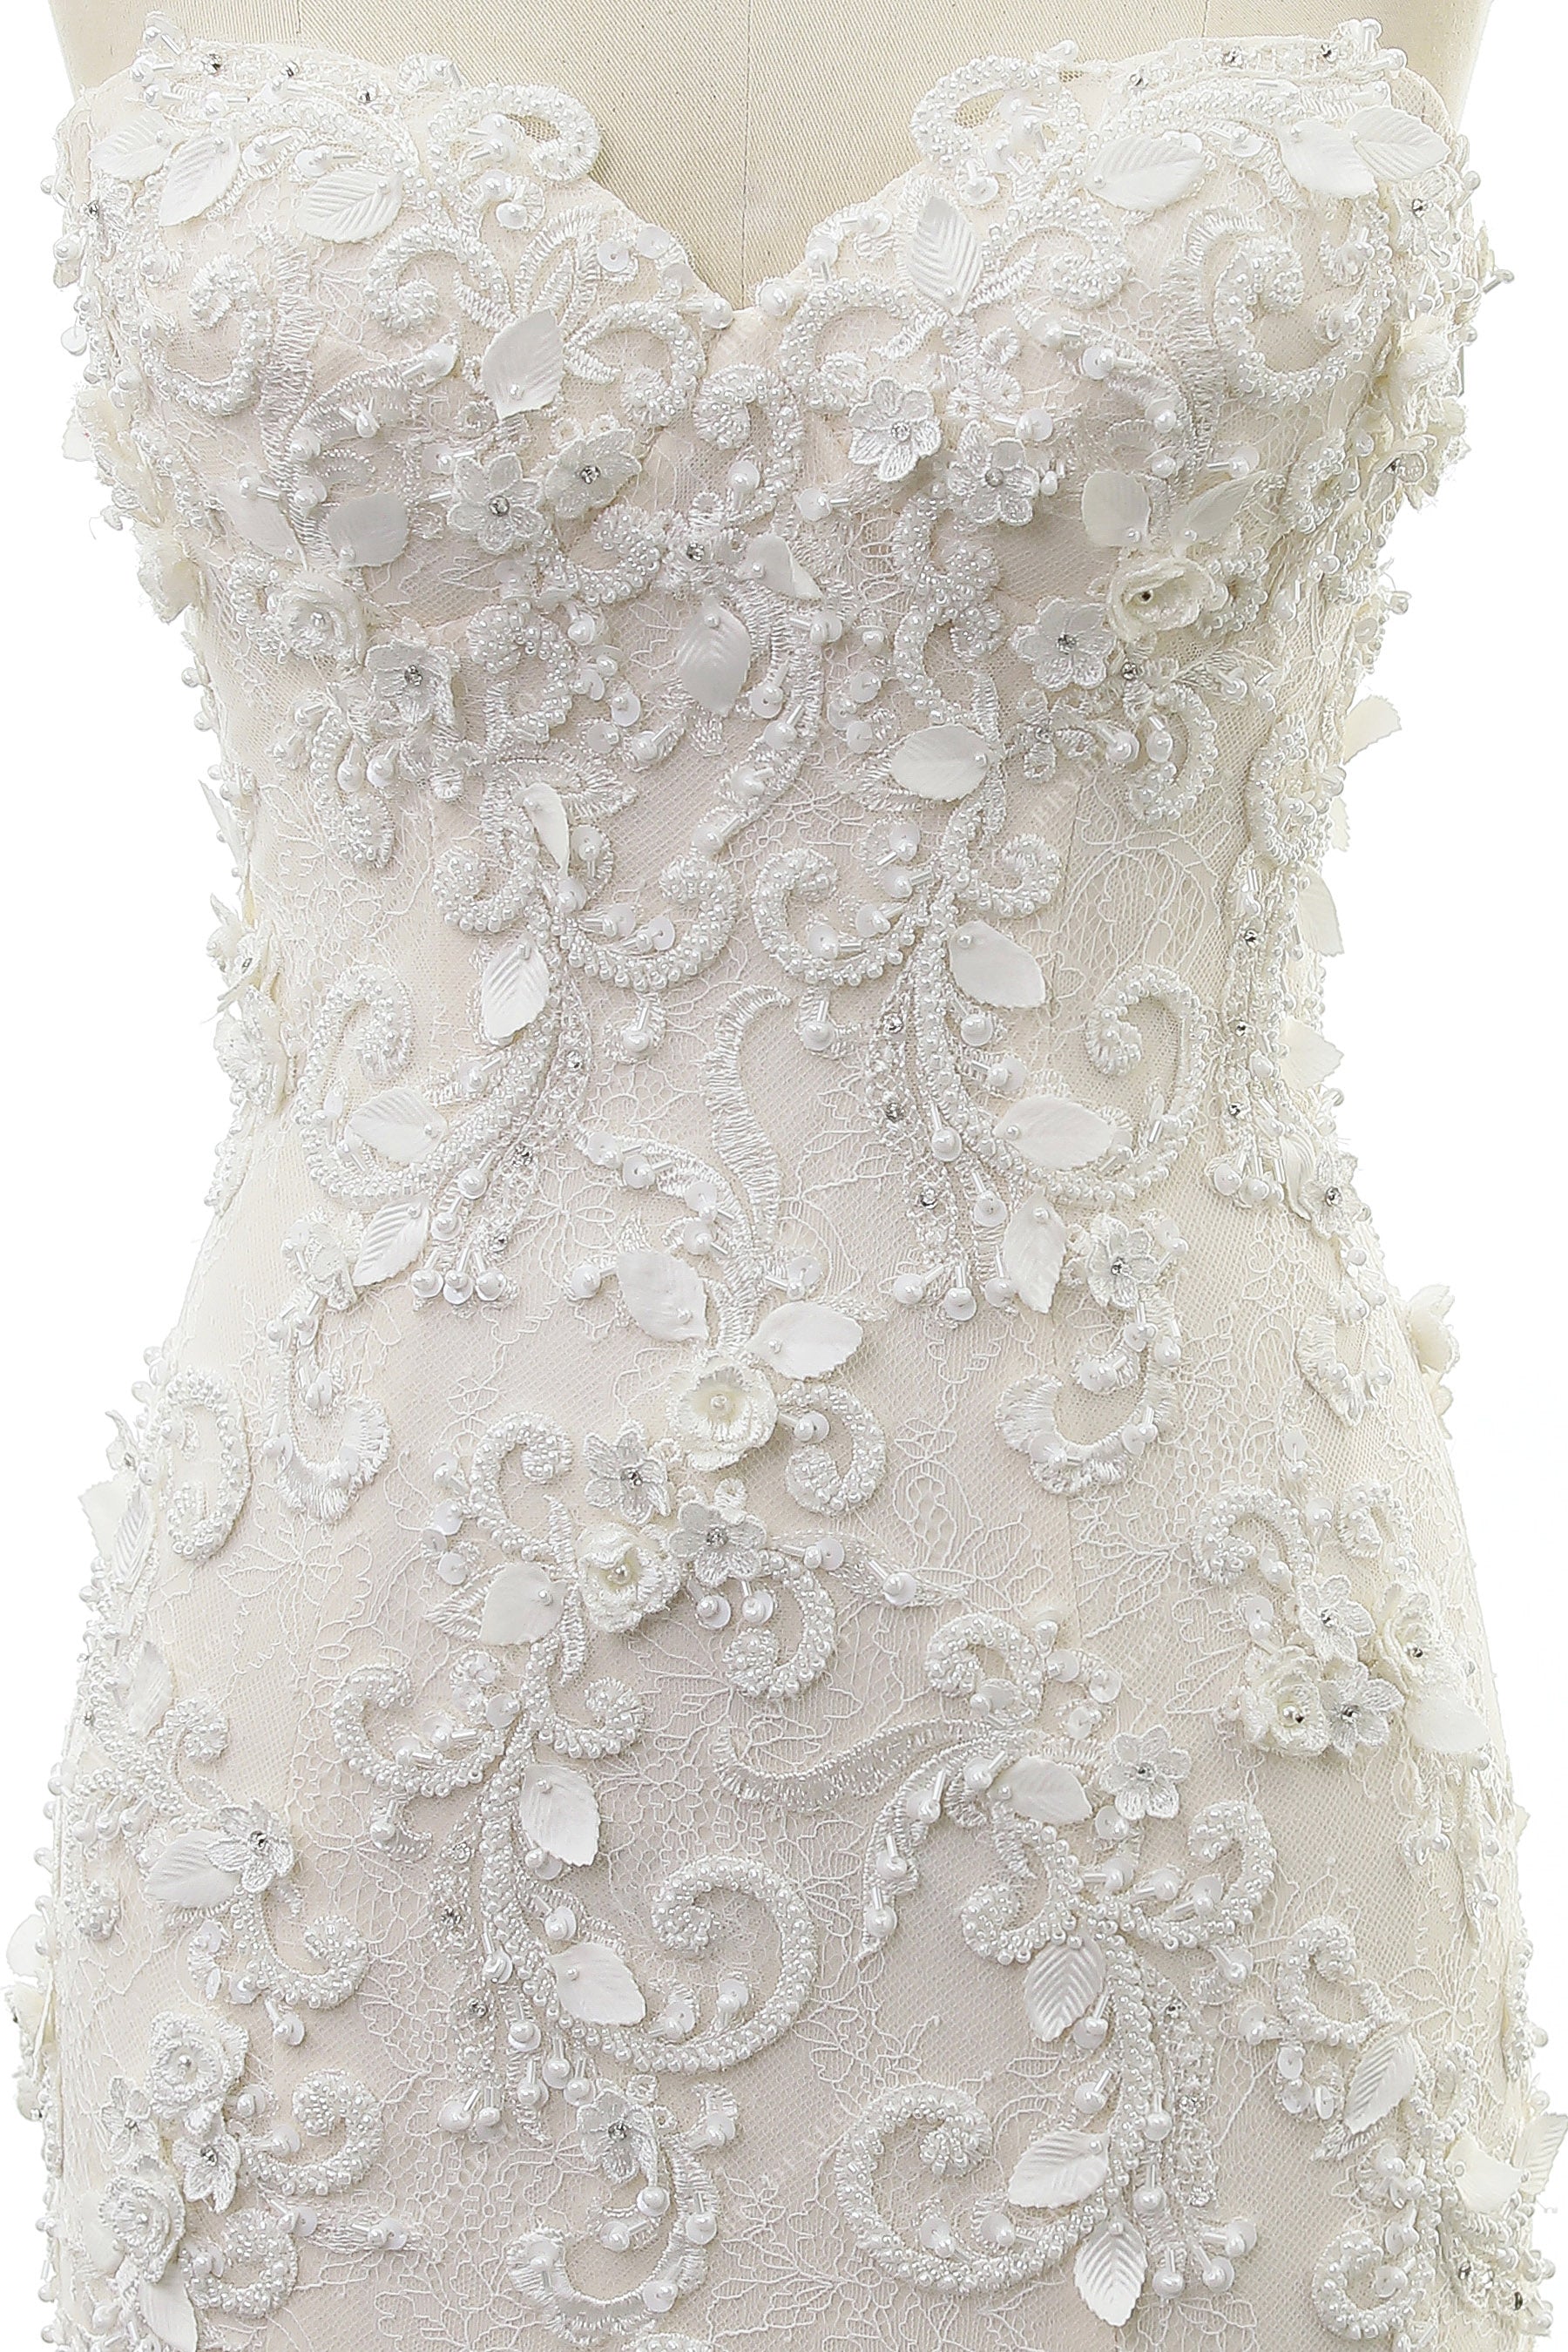 3D Petal Lace Wedding Gown